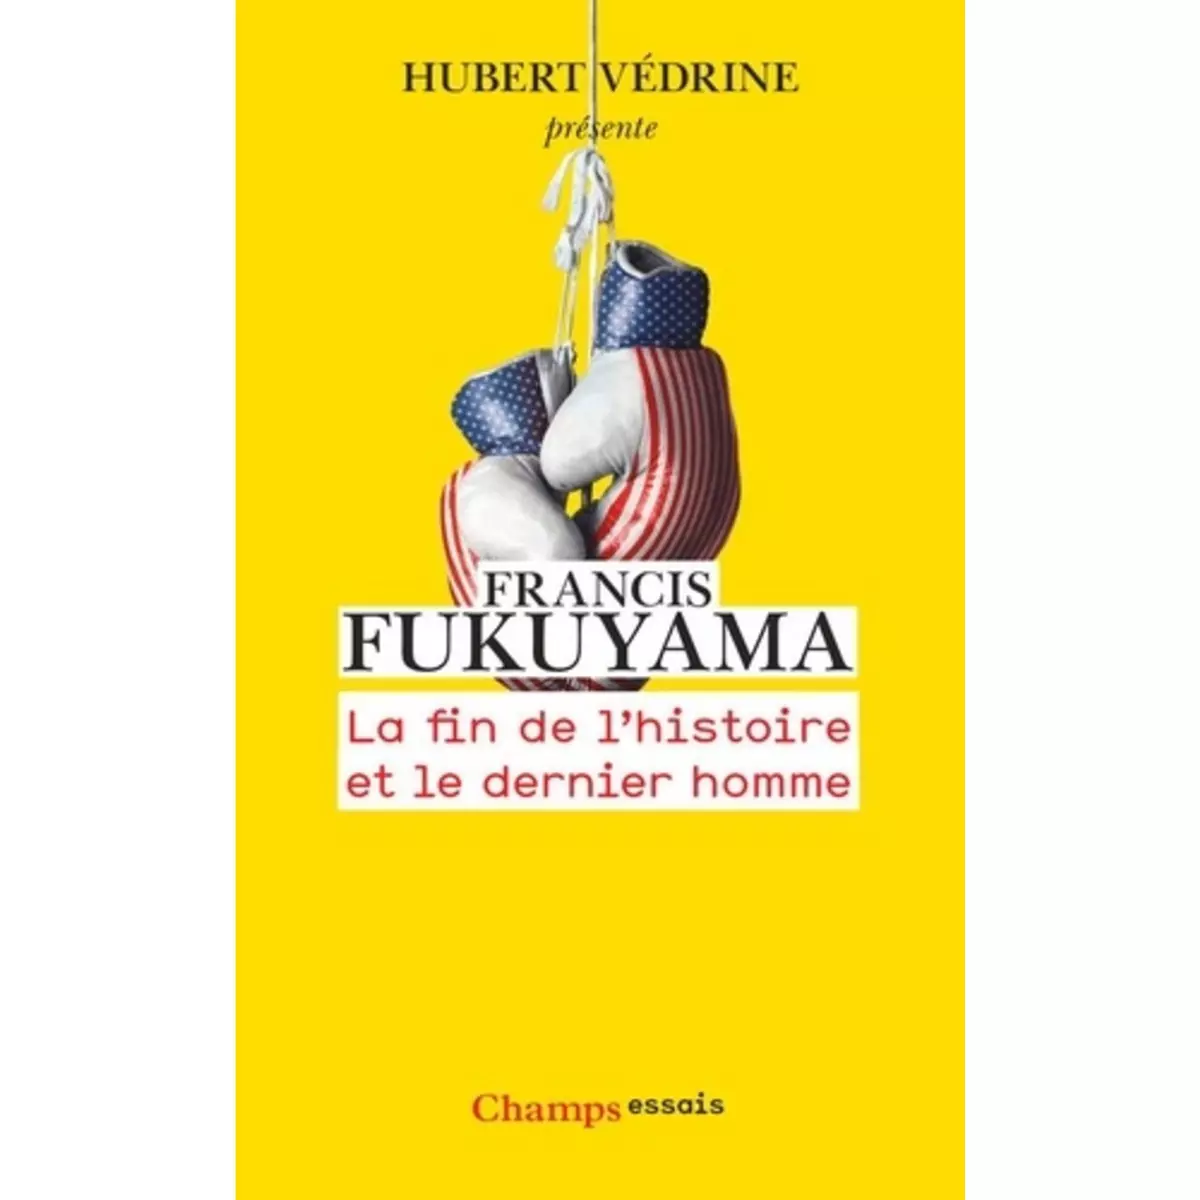  LA FIN DE L'HISTOIRE ET LE DERNIER HOMME, Fukuyama Francis